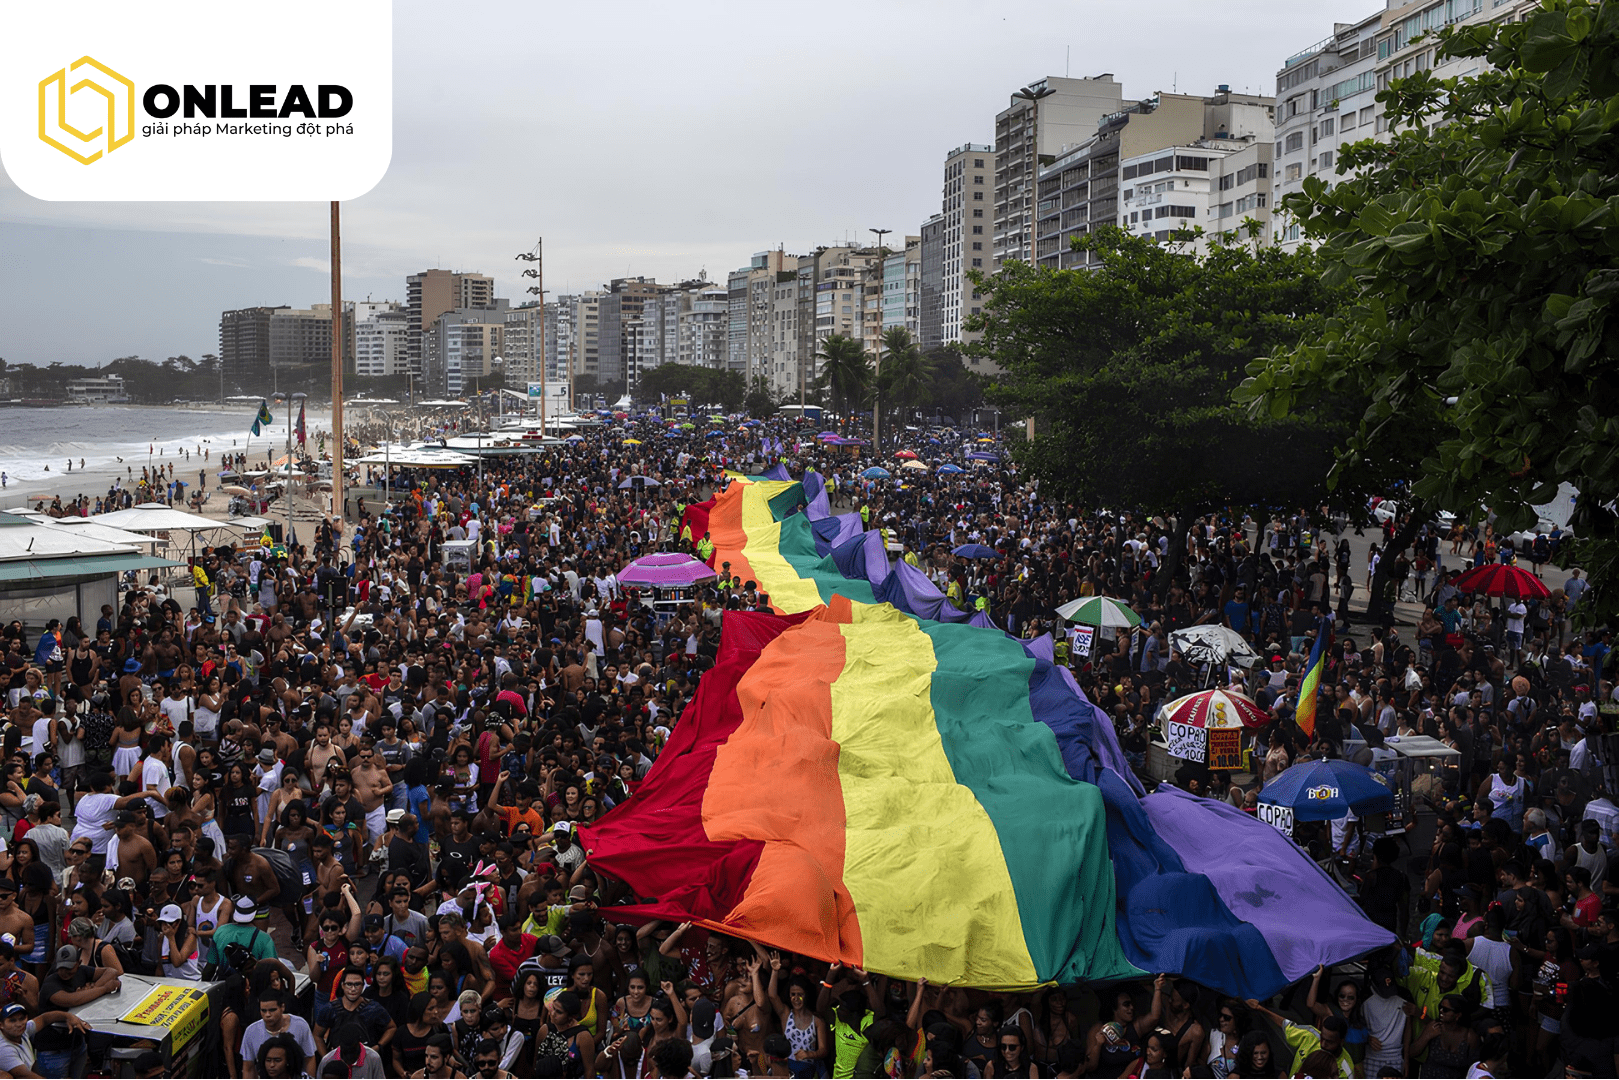 Vấn nạn kỳ thị người đồng tính ở Brazil đã đạt đến đỉnh điểm